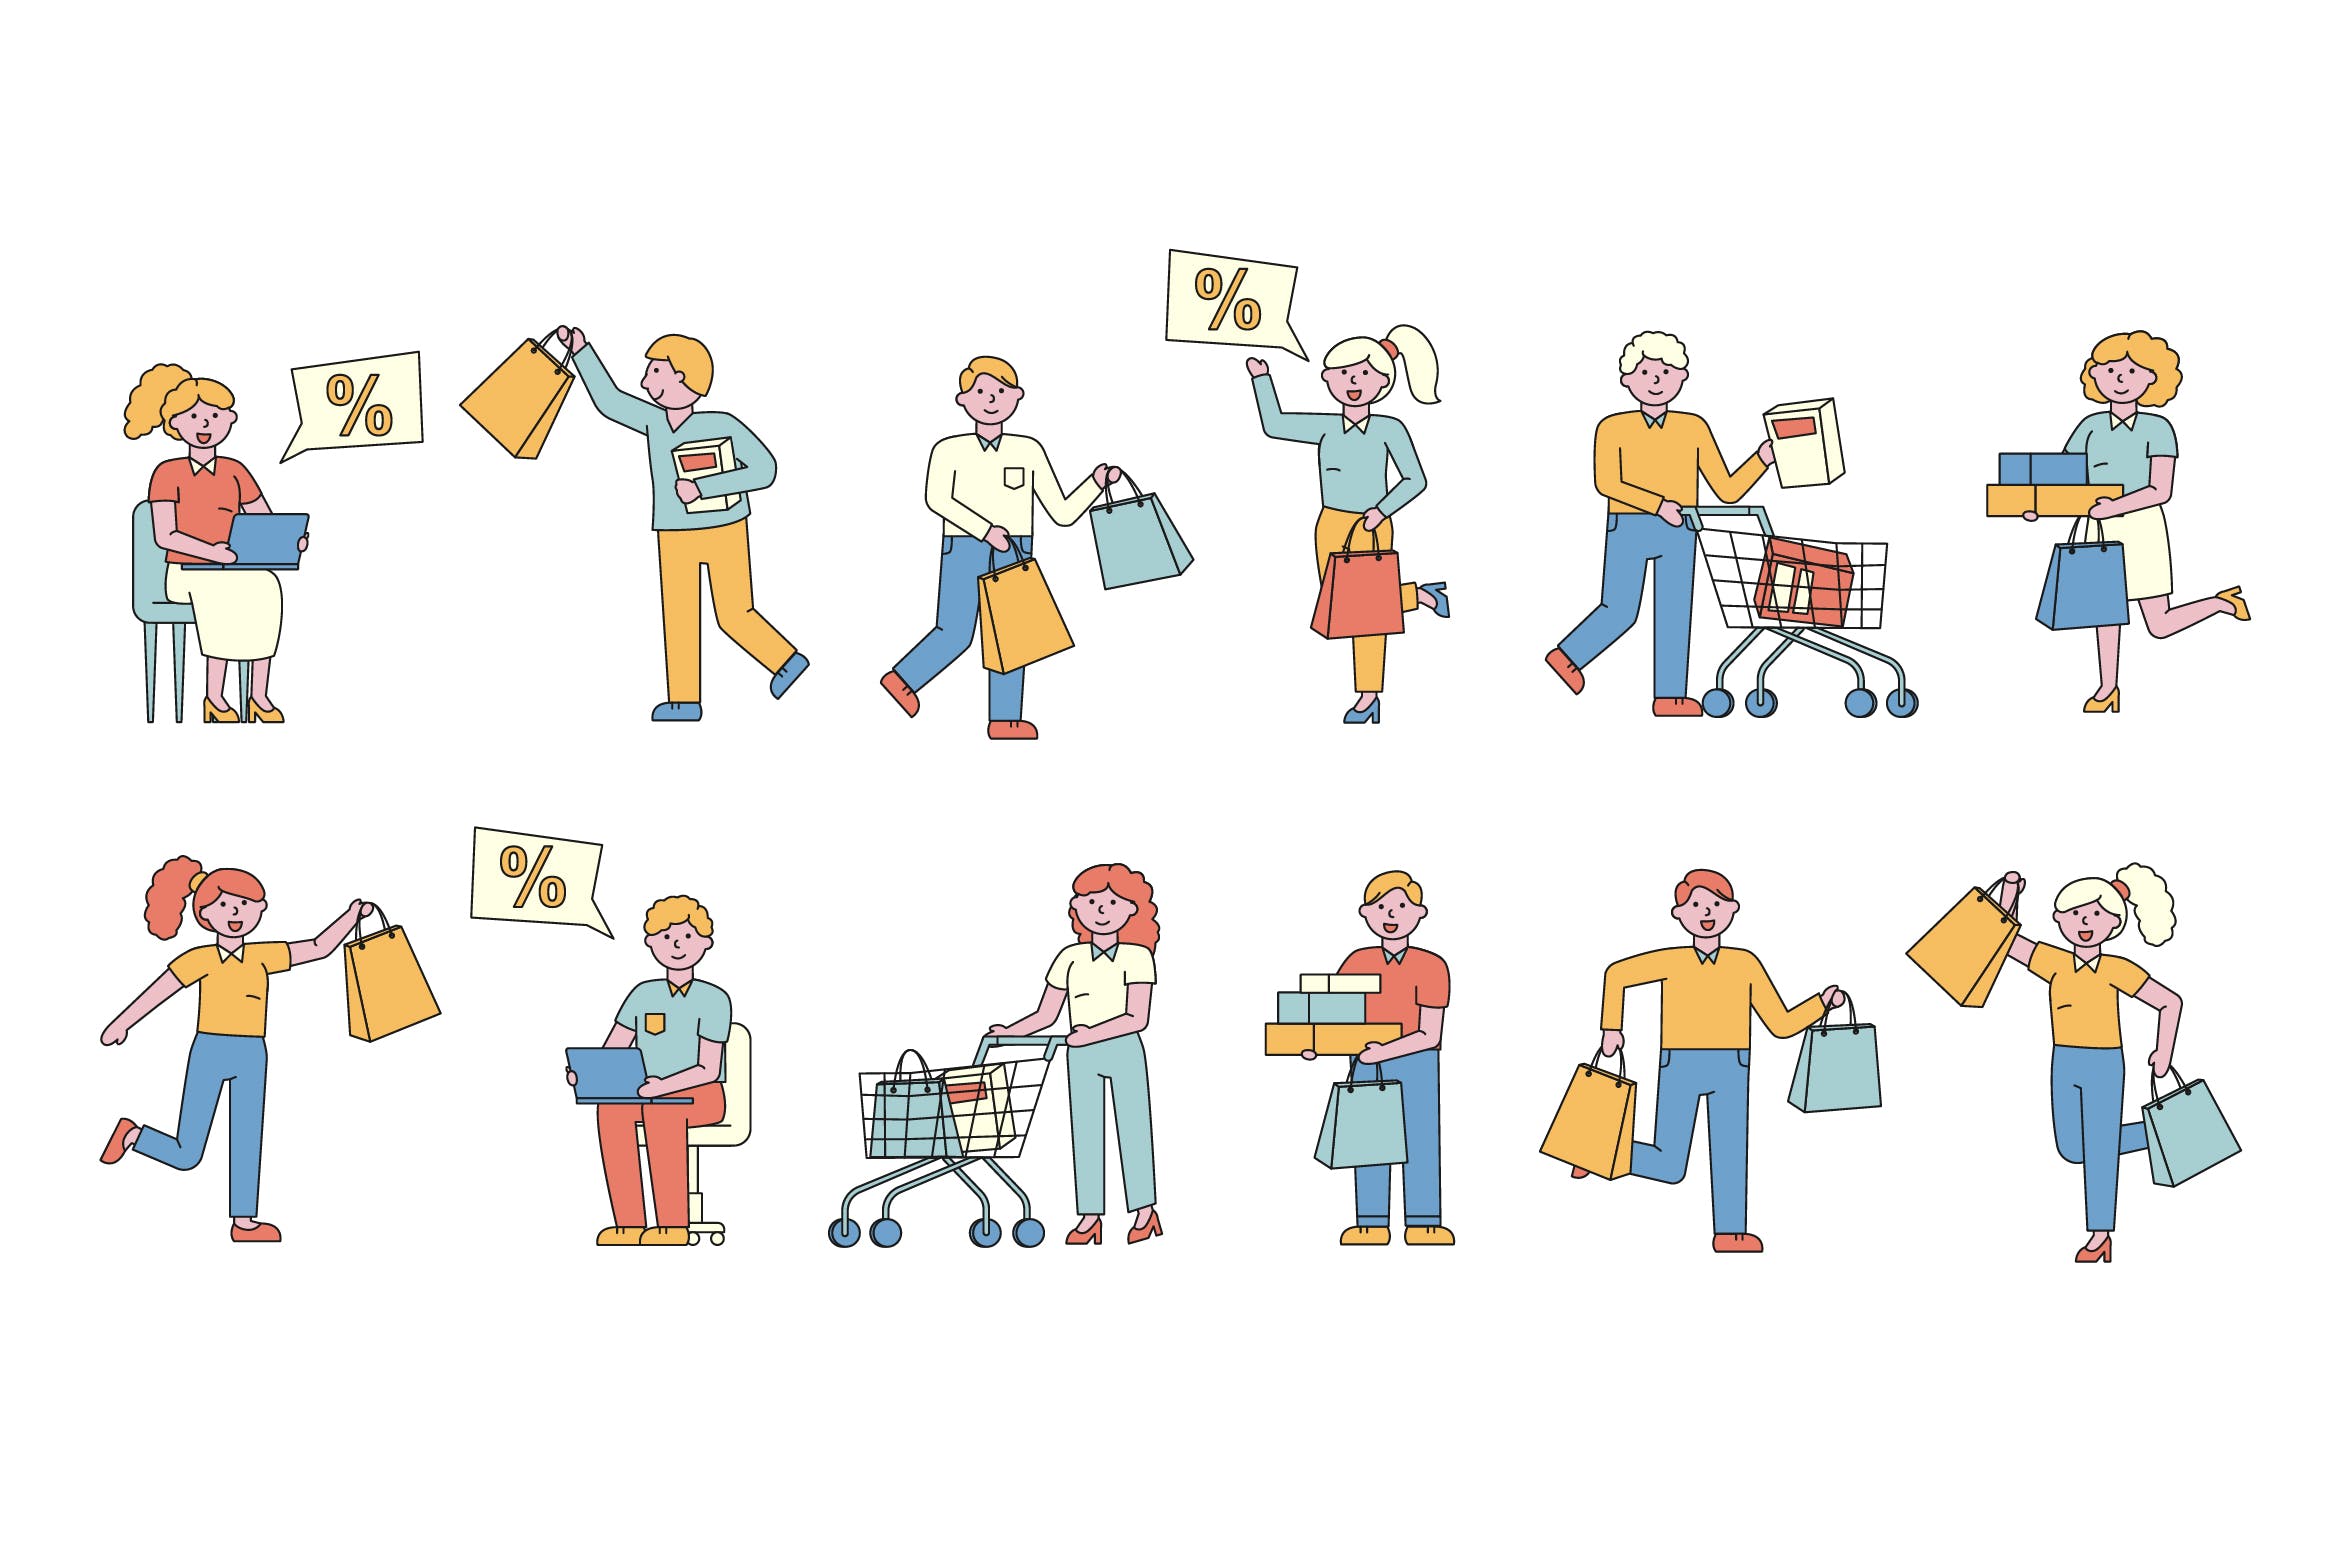 购物狂人人物形象线条艺术矢量插画蚂蚁素材精选素材 Shoppers Lineart People Character Collection插图